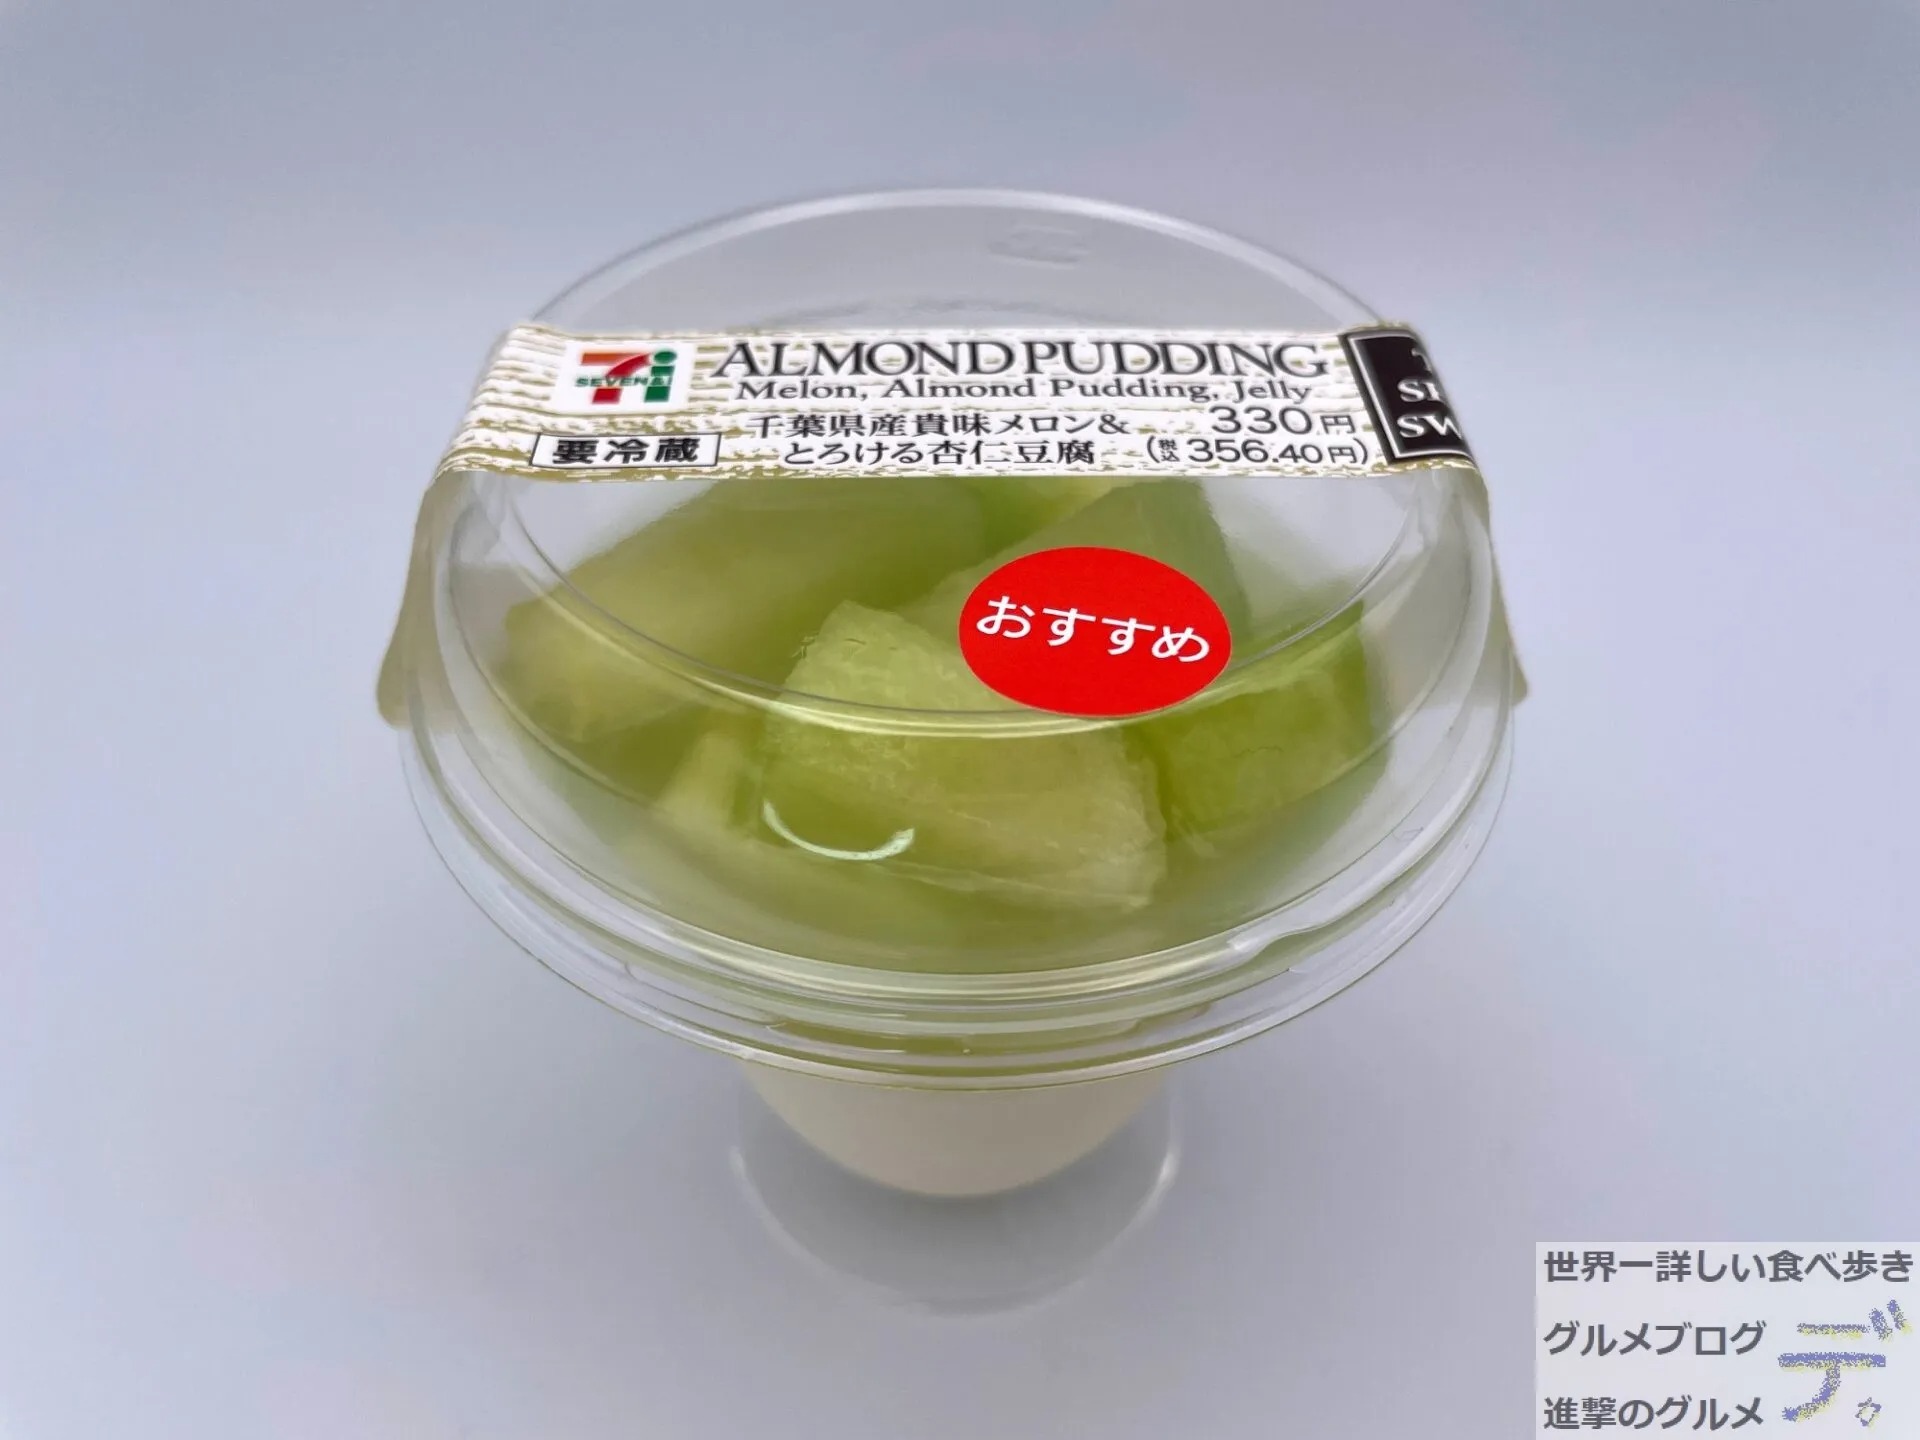 セブン-イレブン「メロン＆とろける杏仁豆腐」 贅沢なカップスイーツ - 進撃のグルメ | Yahoo! JAPAN クリエイターズプログラム